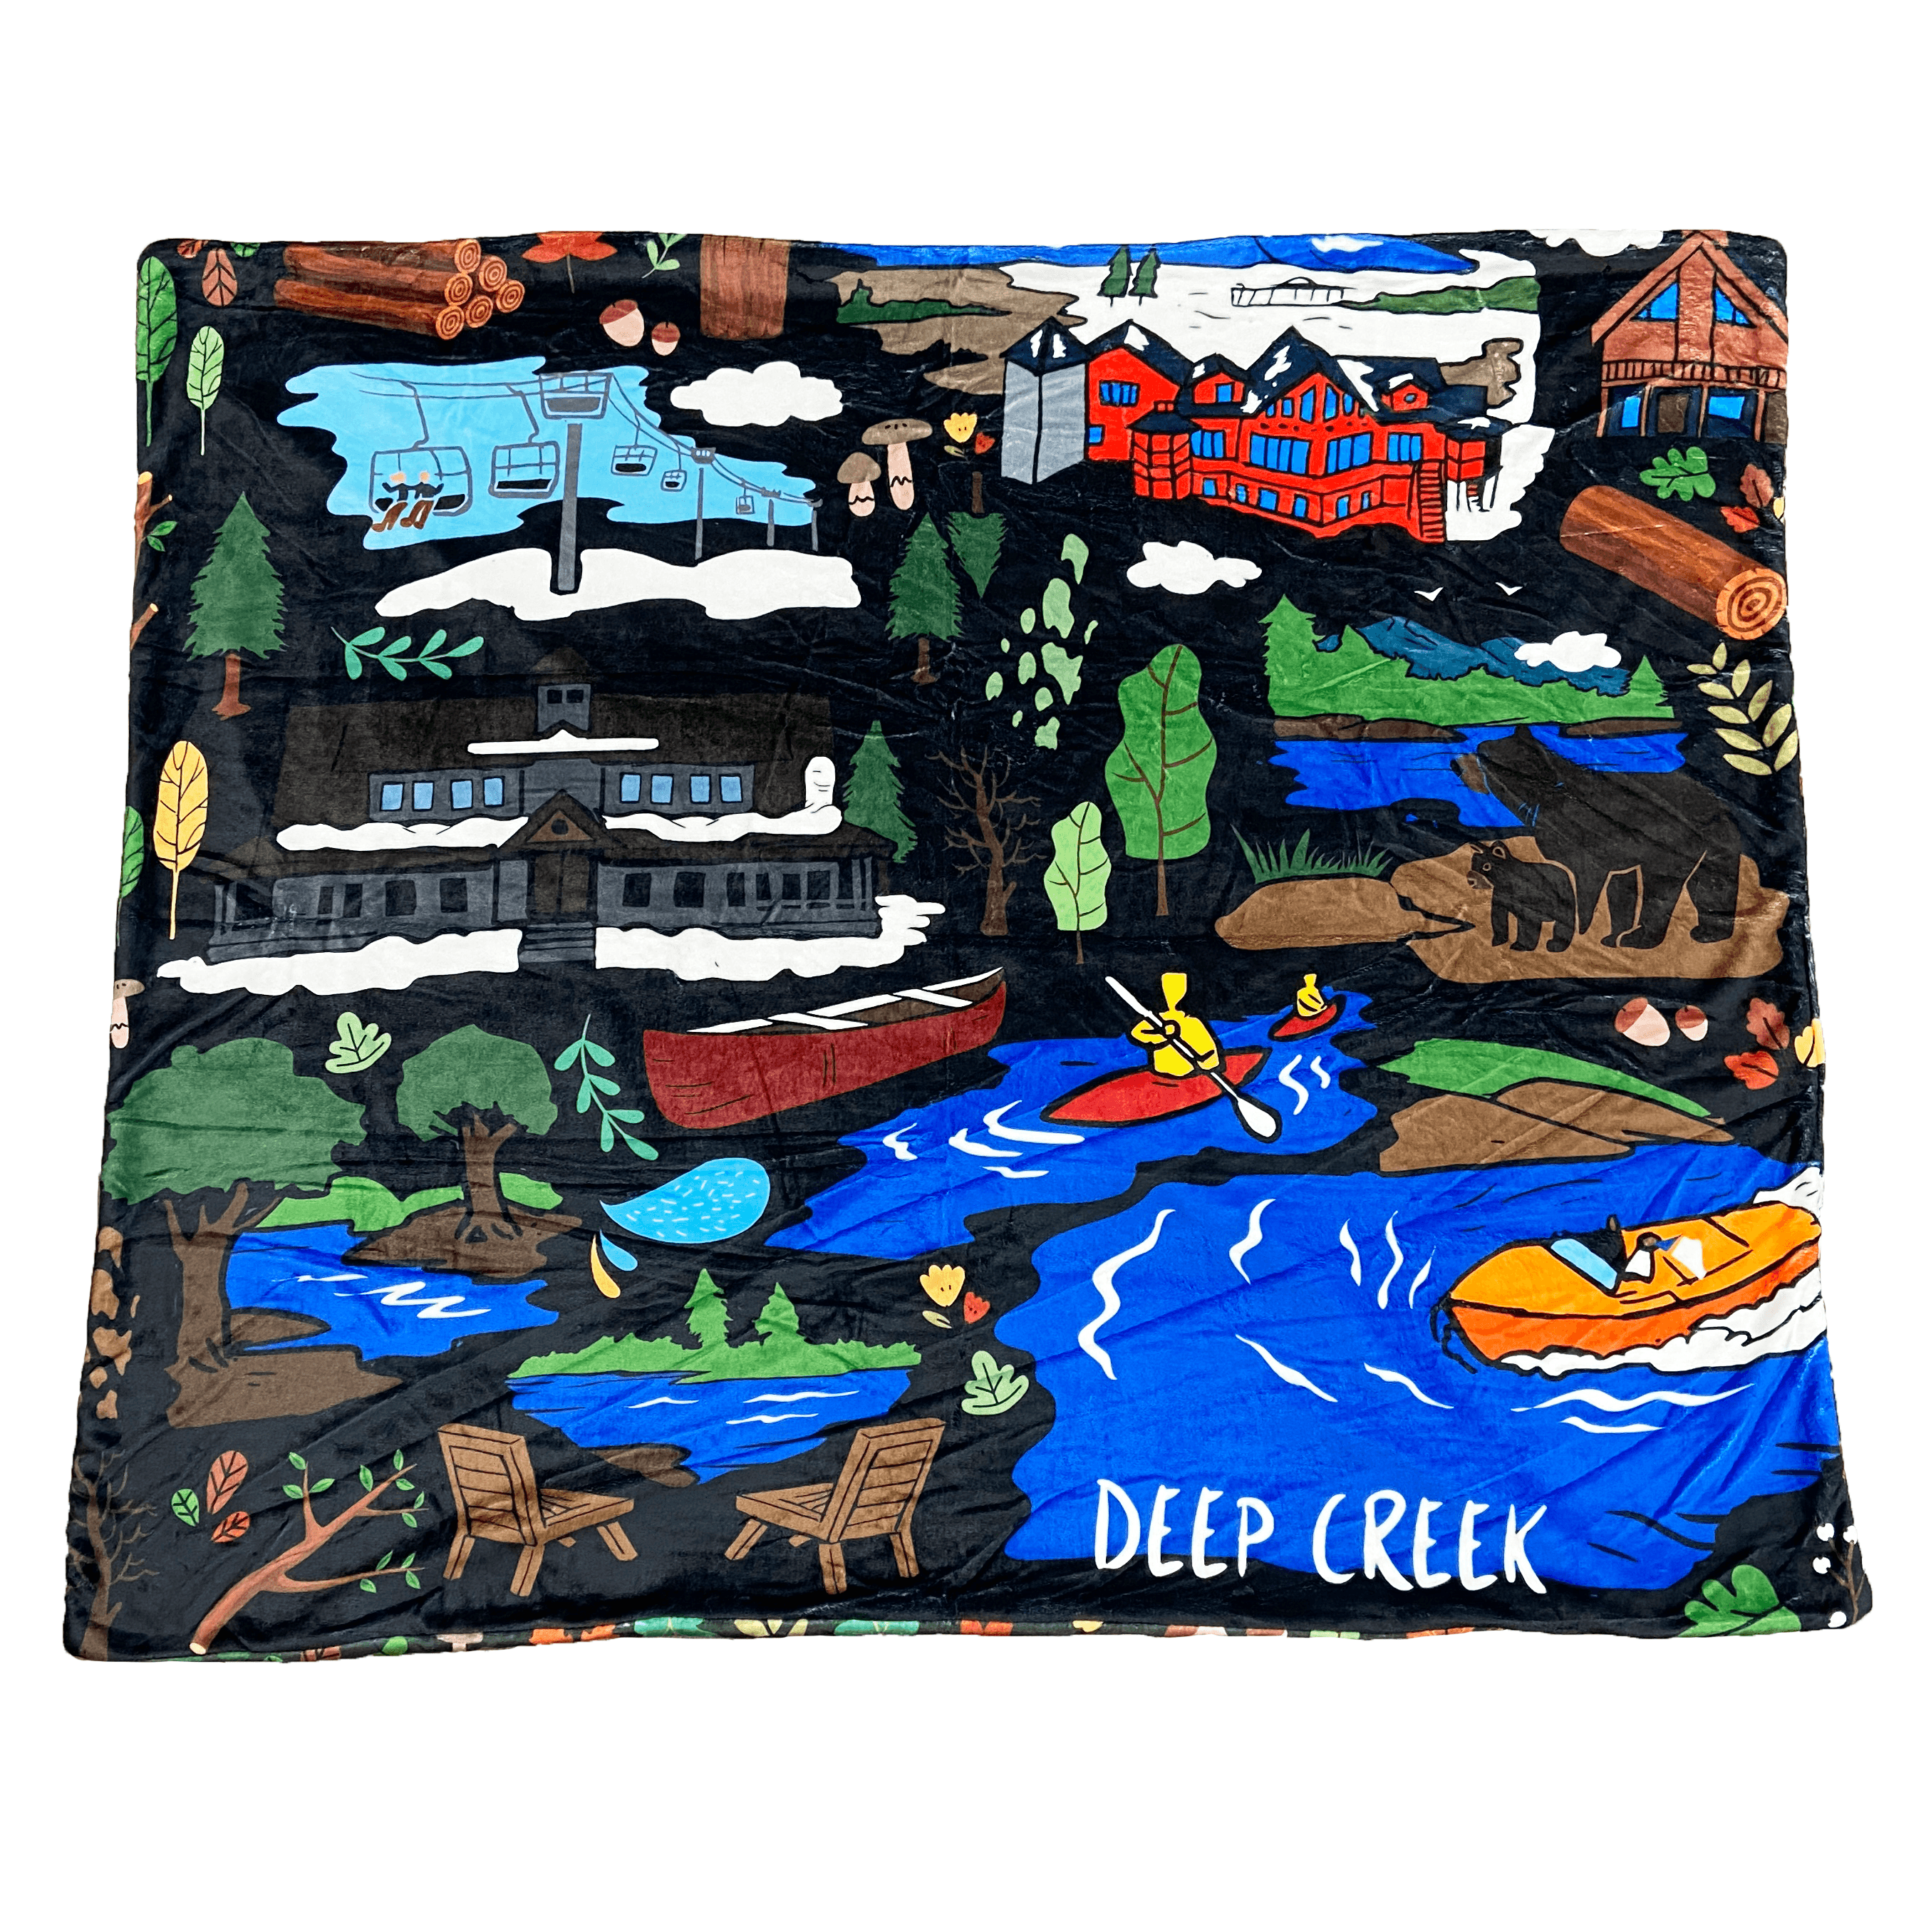 Deep Creek Mural / 58in x 48in Blanket - Route One Apparel